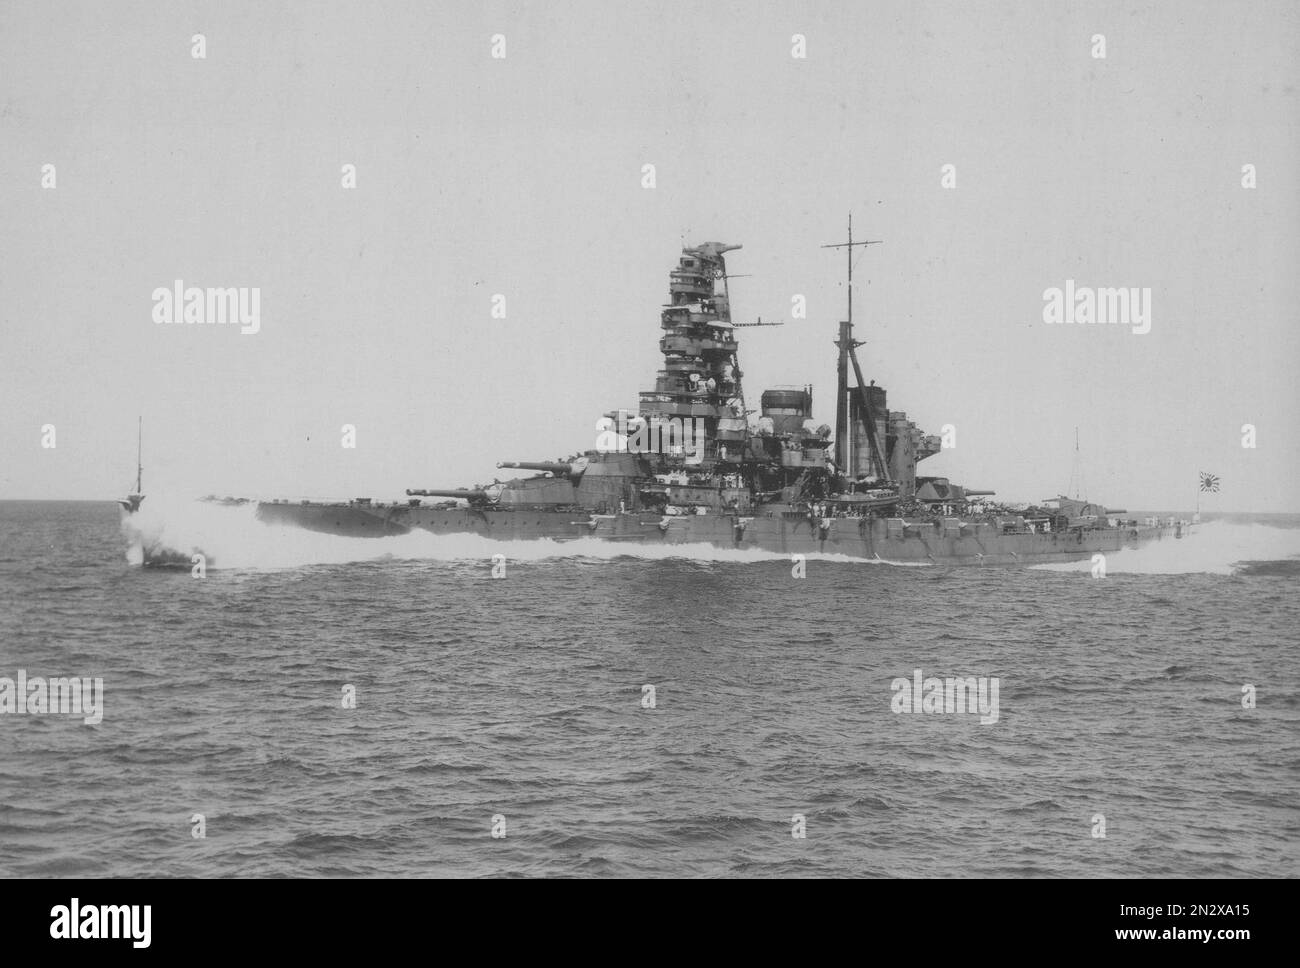 JAPAN - 28. August 1934 - das japanische Schlachtschiff Haruna wird nach ihrem zweiten Refi irgendwo vor Japan im Jahr 1934 auf See getestet - Foto: Stockfoto